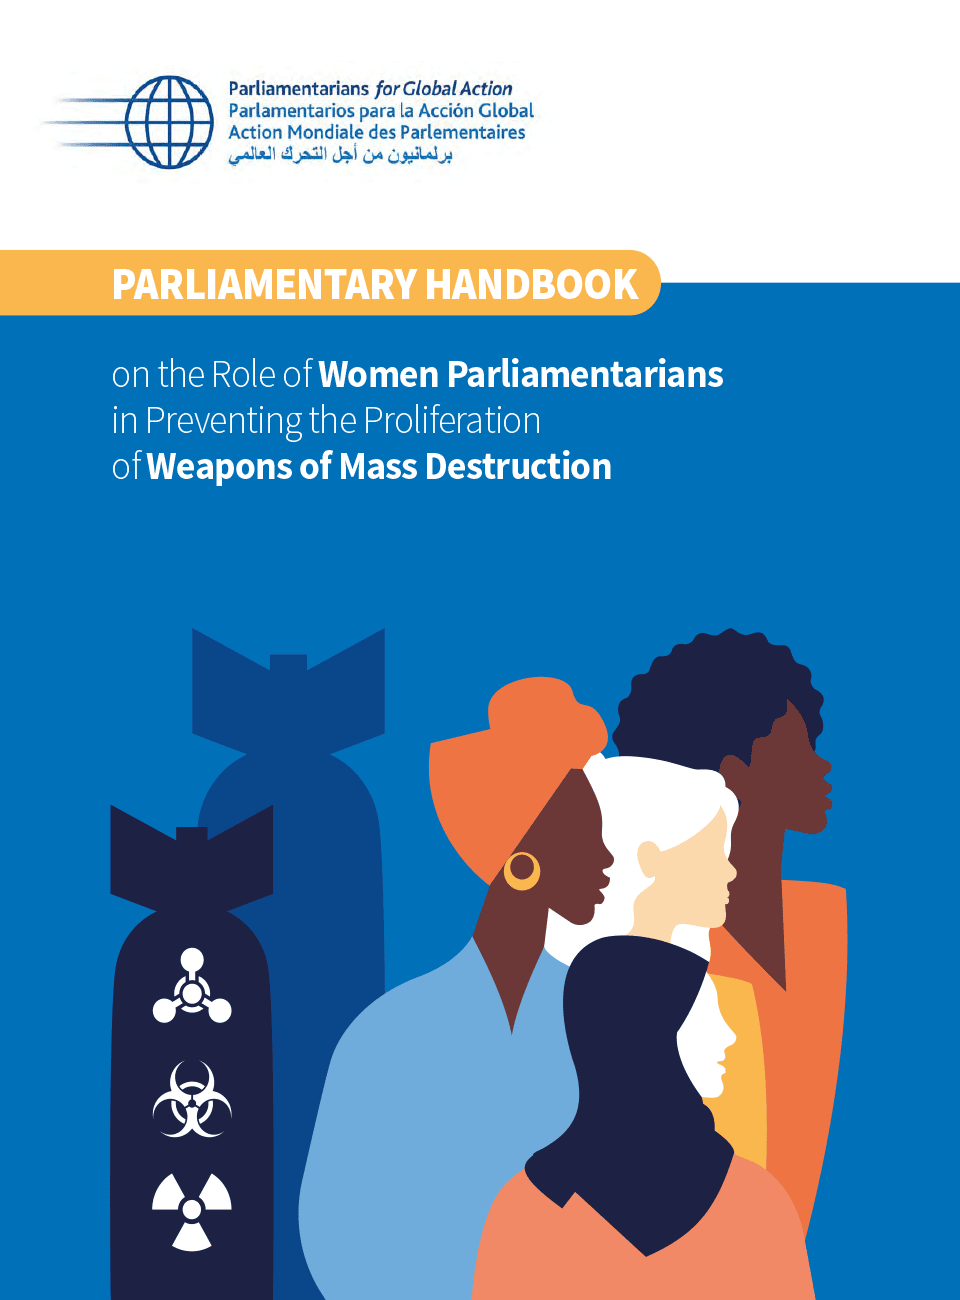 Guide parlementaire sur le rôle des femmes parlementaires dans la prévention de la prolifération des armes de destruction massive